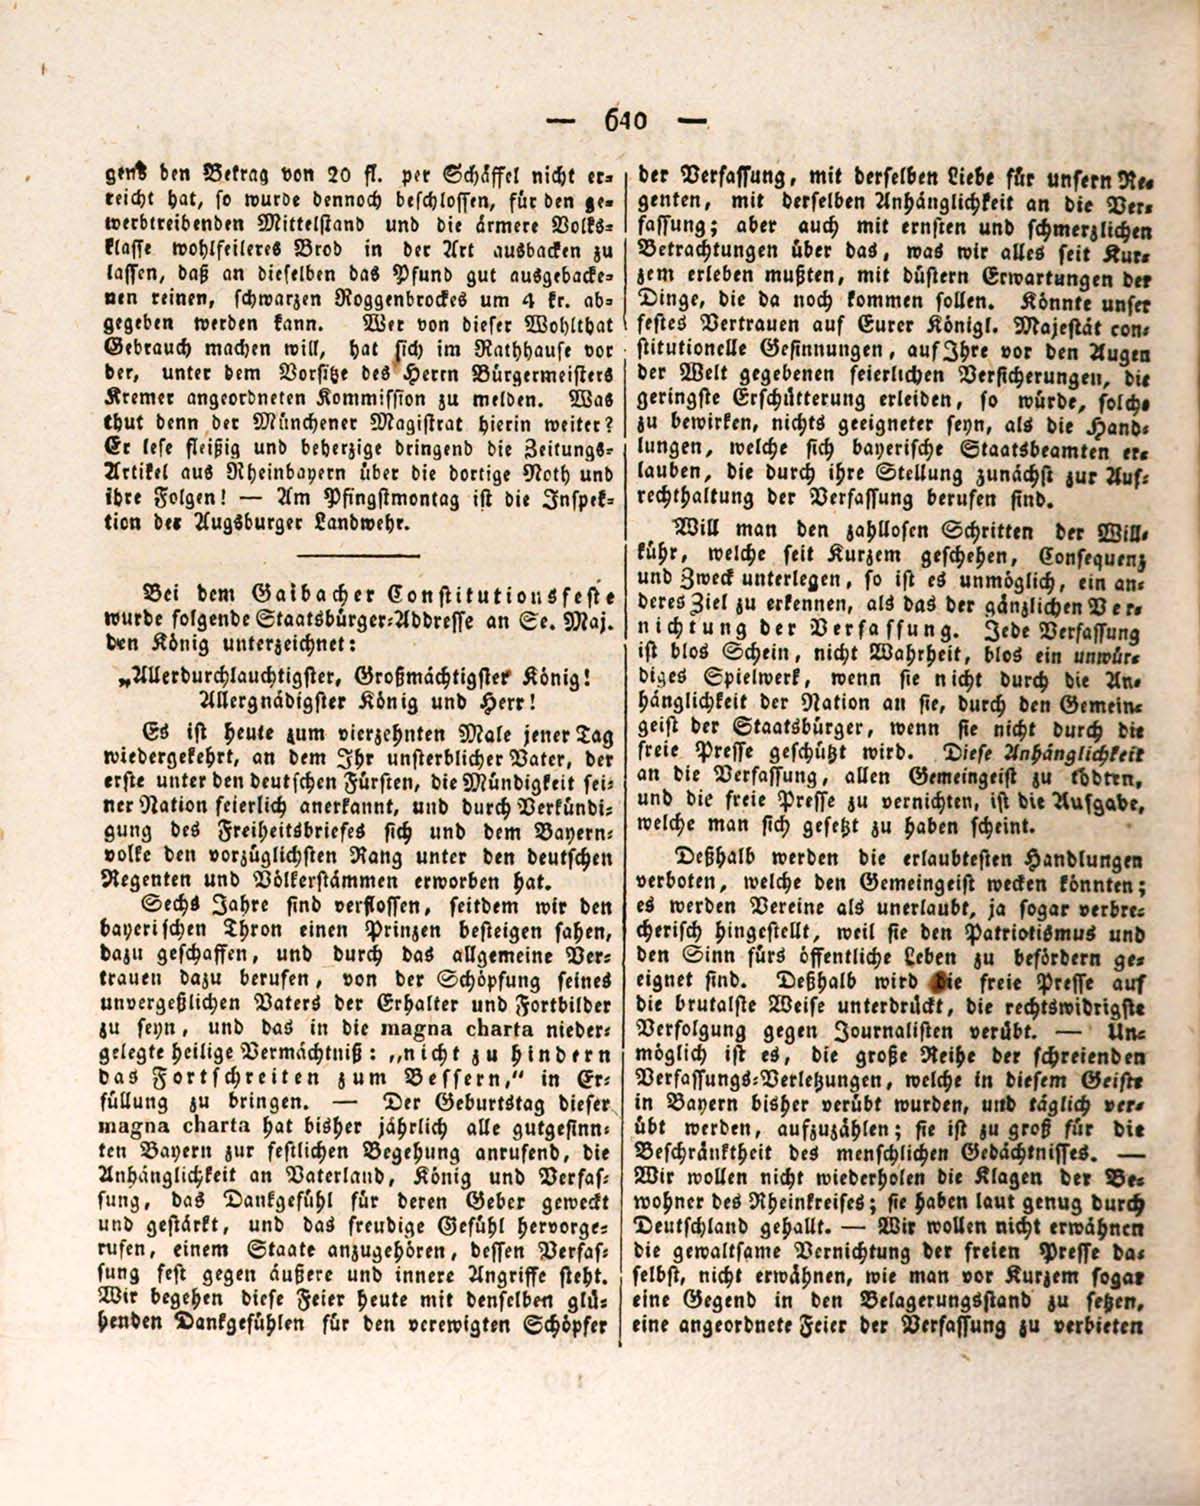 Münchener Conversations-Blatt, 7. Juni 1832. Klick öffnet das Faksimile.